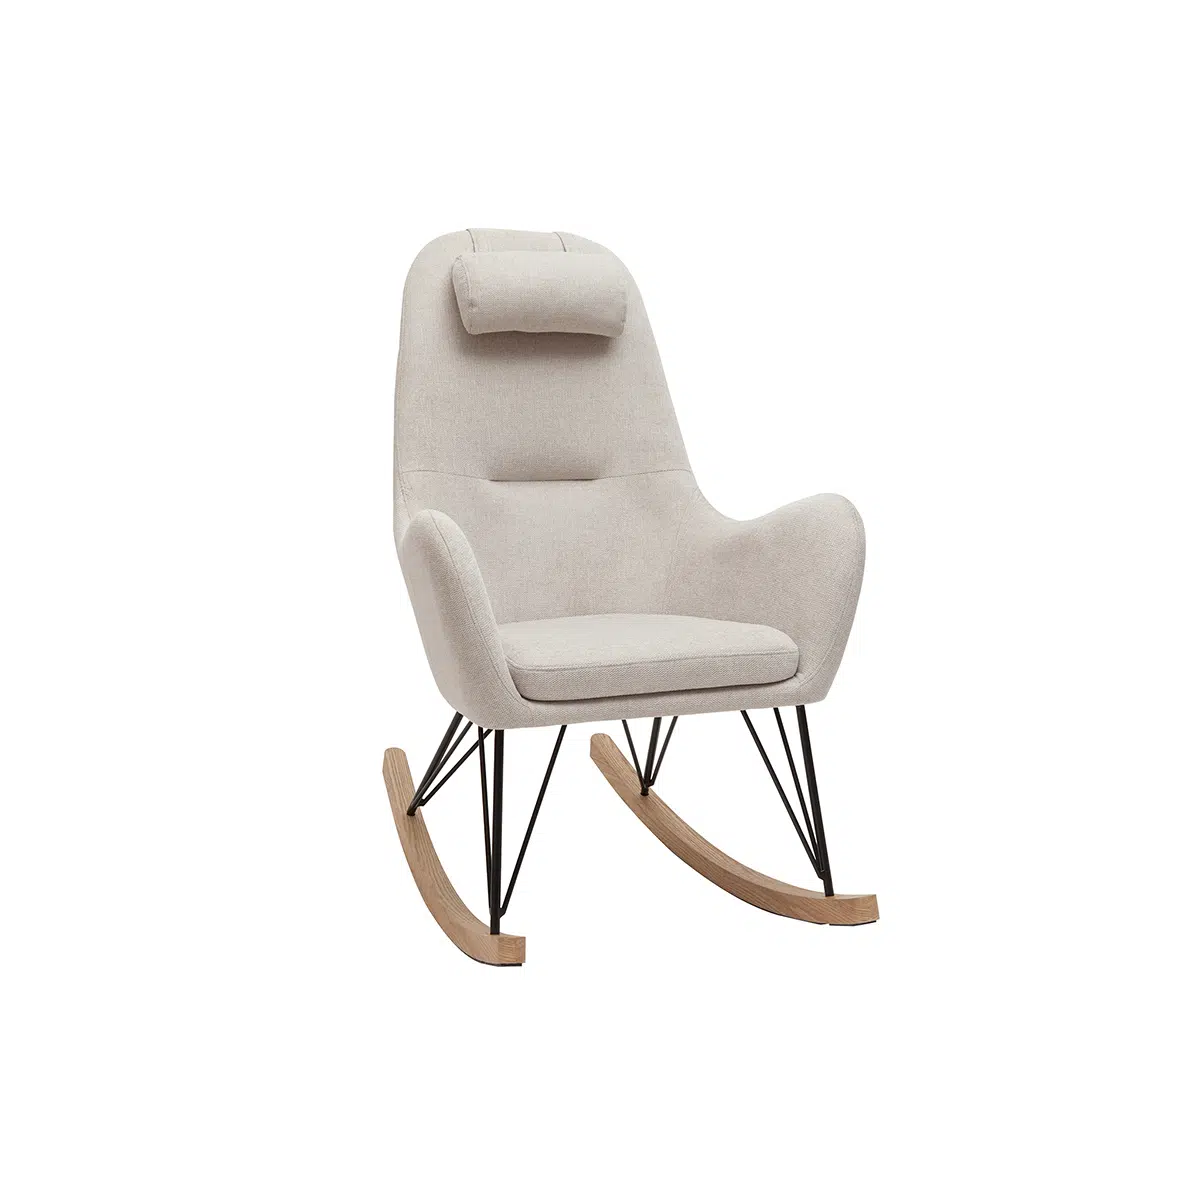 Rocking chair scandinave en tissu beige